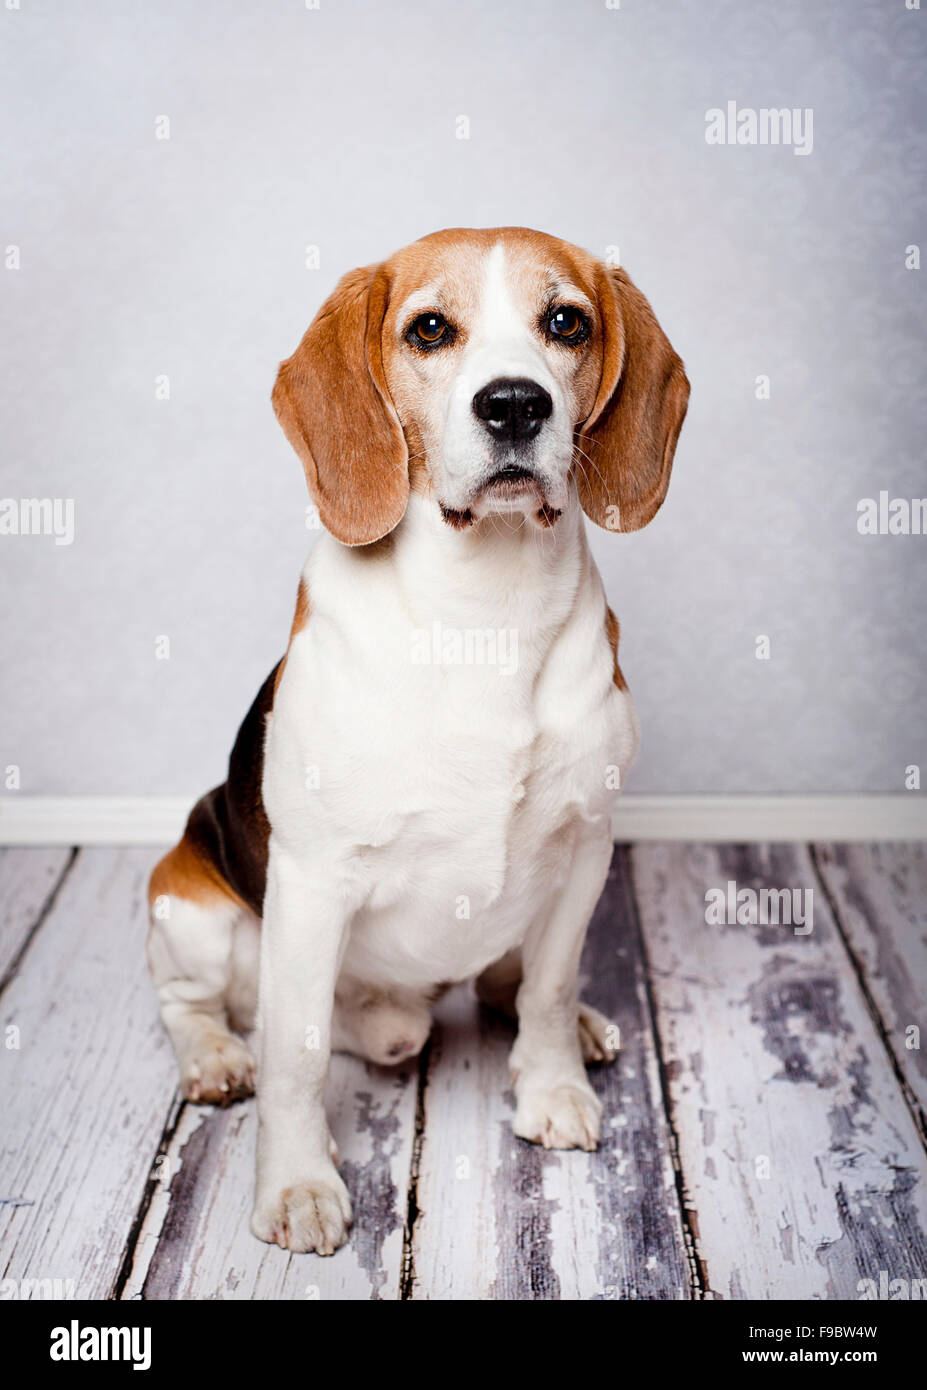 Niedliche Jagd Hund Portrait auf Holzboden Stockfoto